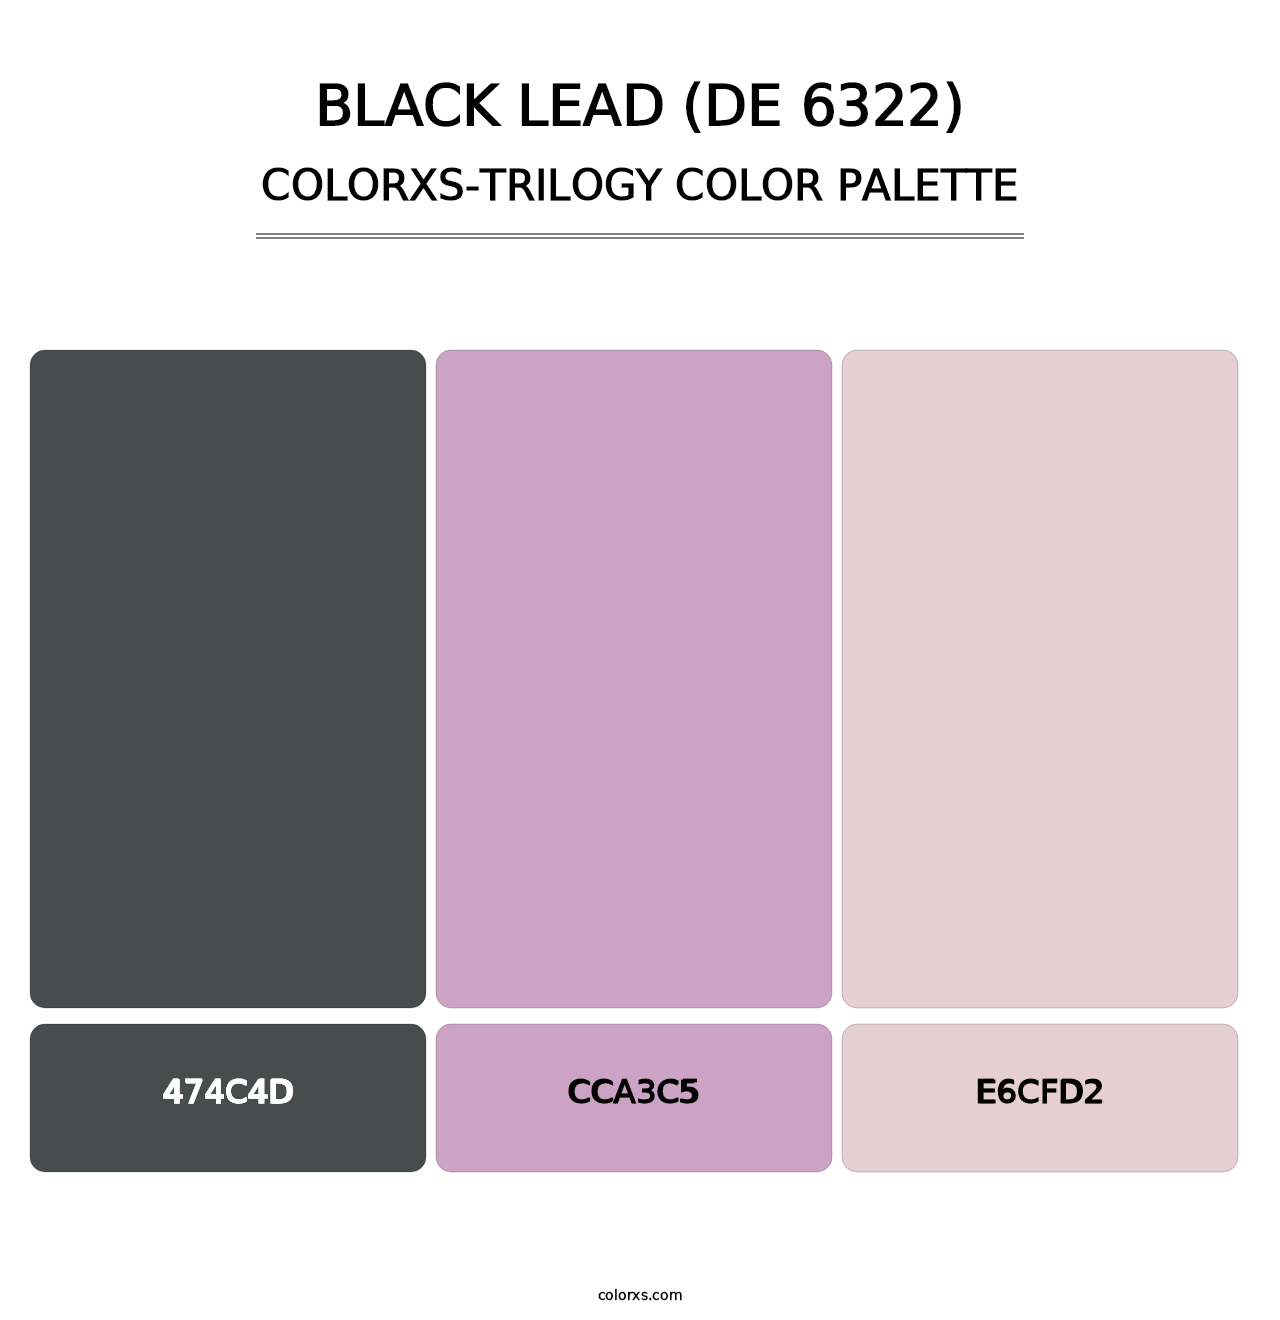 Black Lead (DE 6322) - Colorxs Trilogy Palette